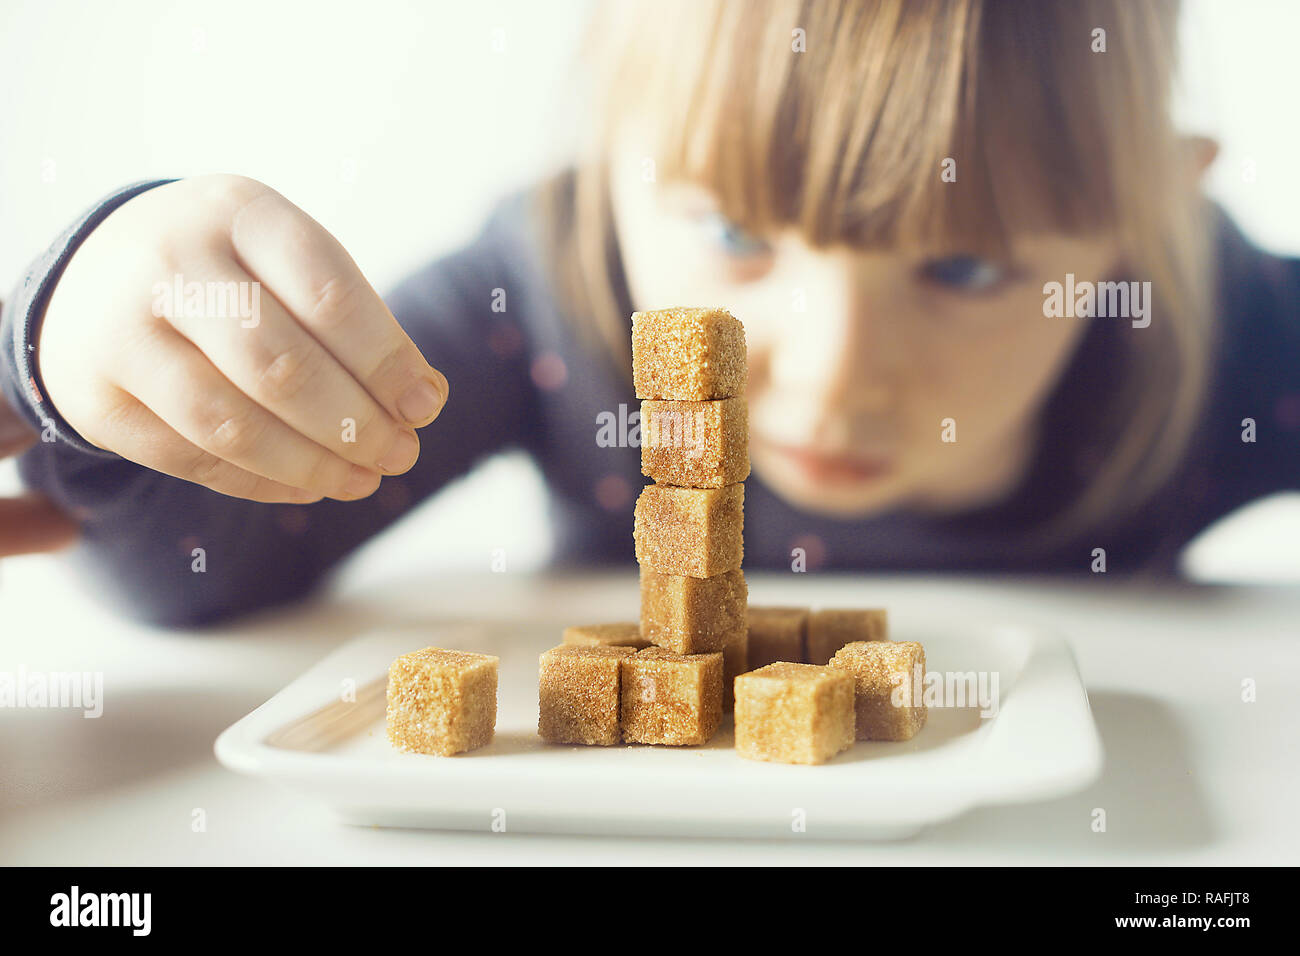 Enfant, cubes de sucre. Le problème de consommation excessive de sucre par les enfants de moins de 10 ans. Banque D'Images